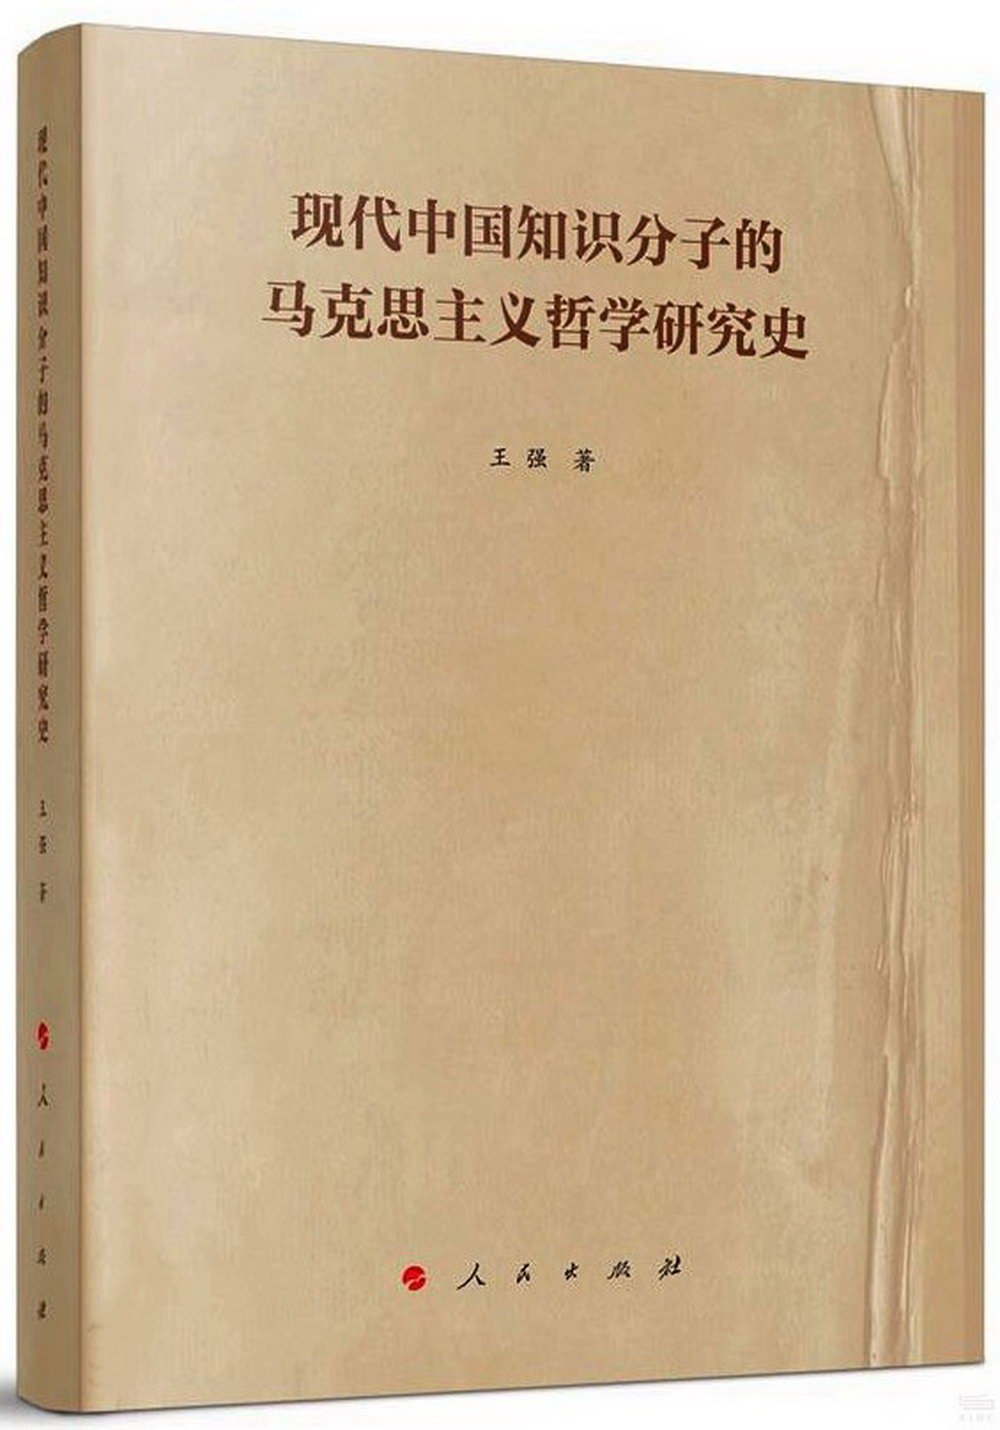 現代中國知識分子的馬克思主義哲學研究史